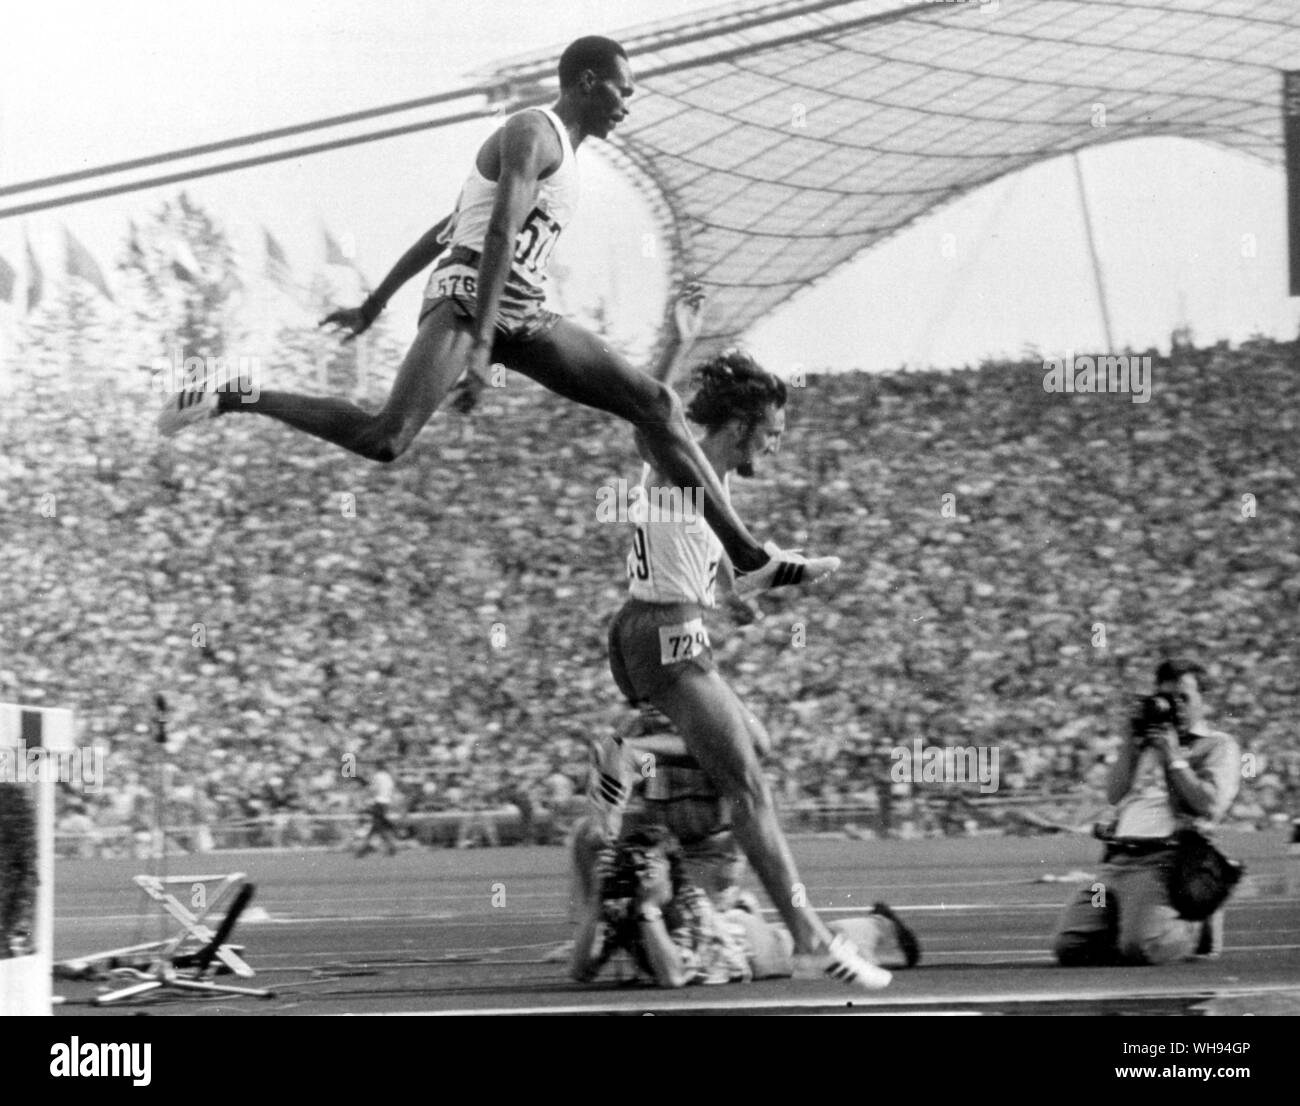 Septiembre 1972: Juegos Olímpicos de Munich. Corredor de carreras de obstáculos de Kenia, Kip Keino en el 3000m final. Foto de stock